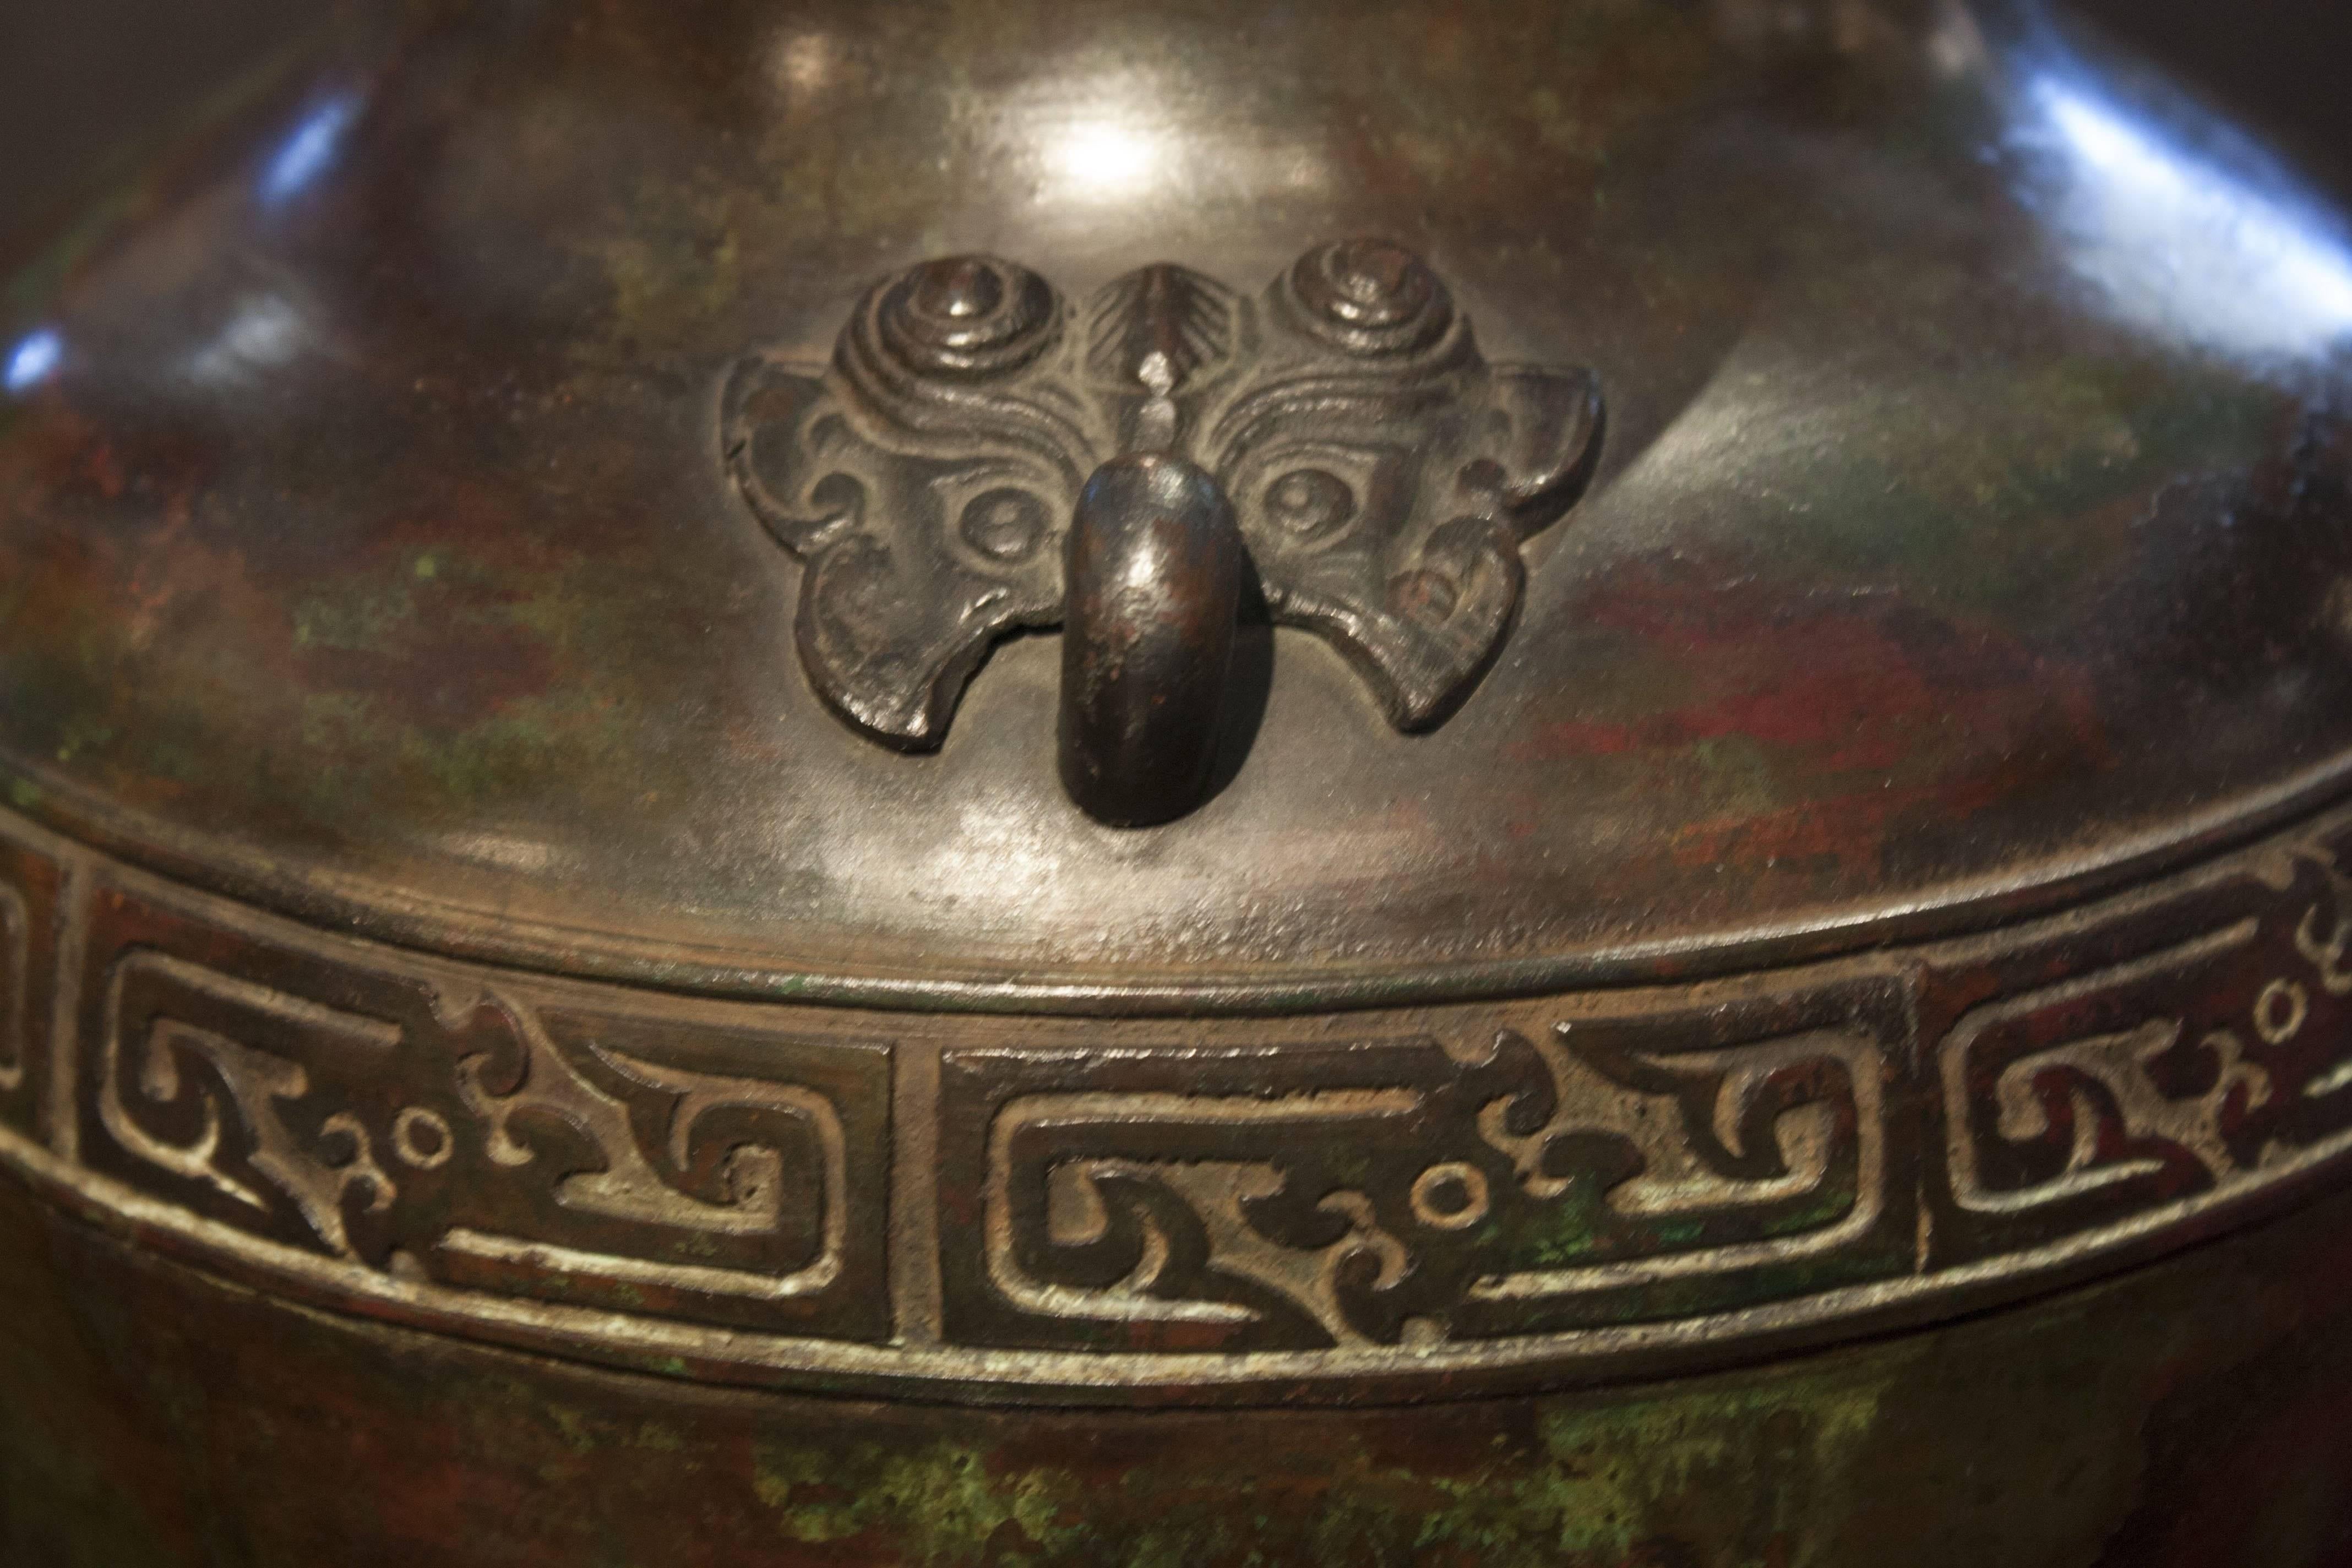 Eine elegante und schön gegossene chinesische Bronzevase aus dem frühen 20. Jahrhundert im archaischen Stil mit einer herrlichen Lackpatina in Braun-, Rot- und Grüntönen. 
Die Schultern sind mit gegenüberliegenden Taotie (Oger)-Maskenringgriffen